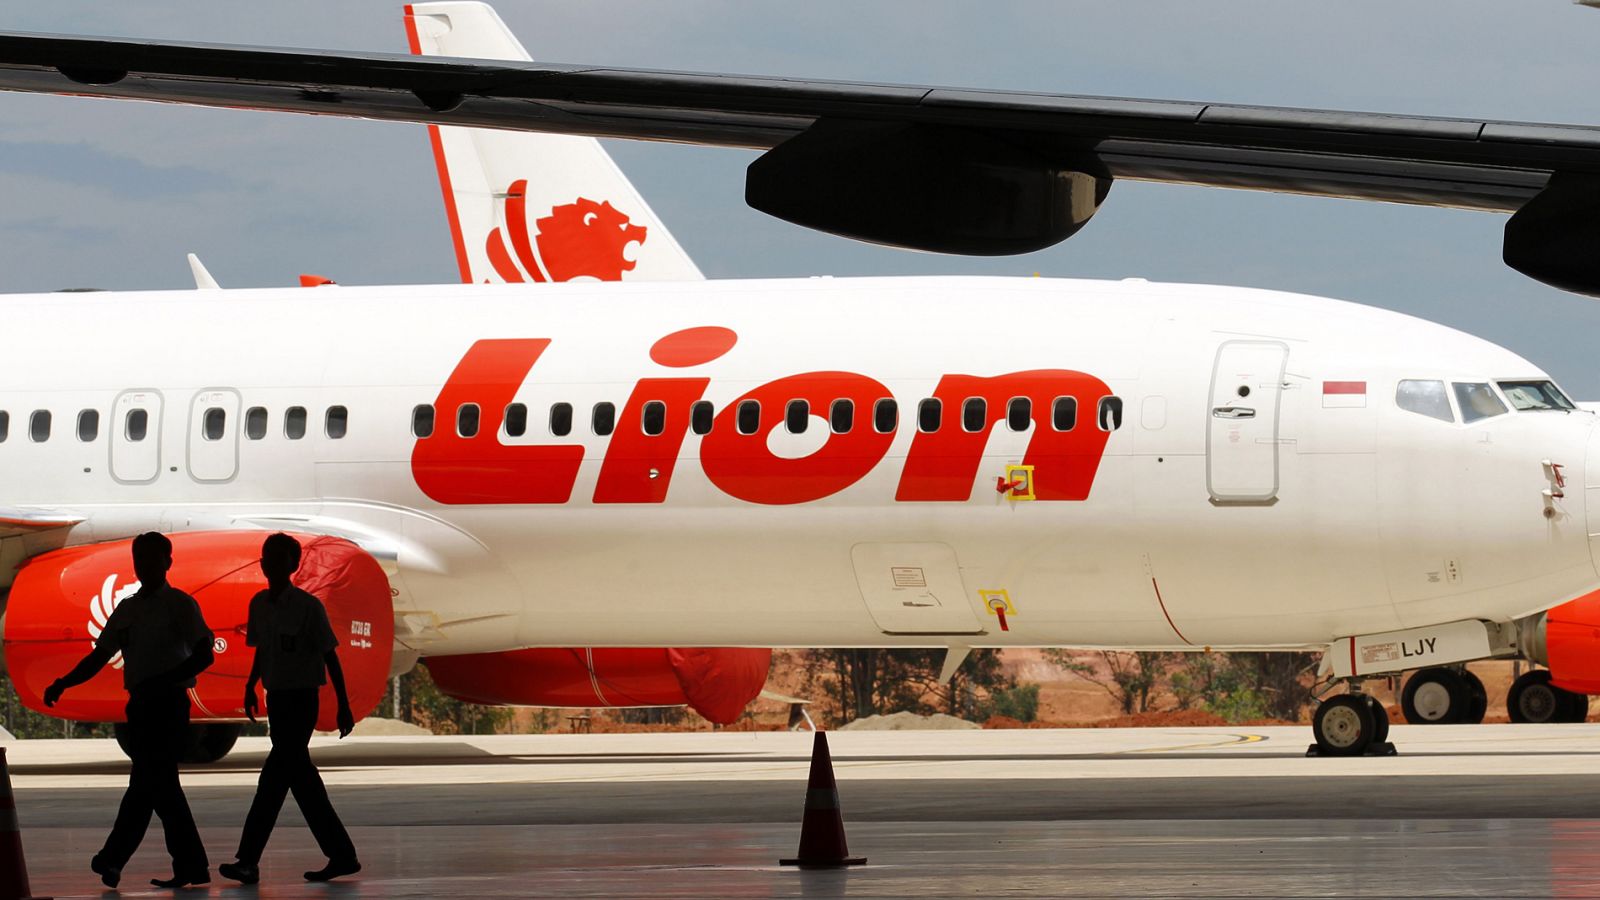 Accidente aéreo: Un avión de la compañía Lion Air se estrella con 188 personas a bordo en Indonesia - RTVE.es